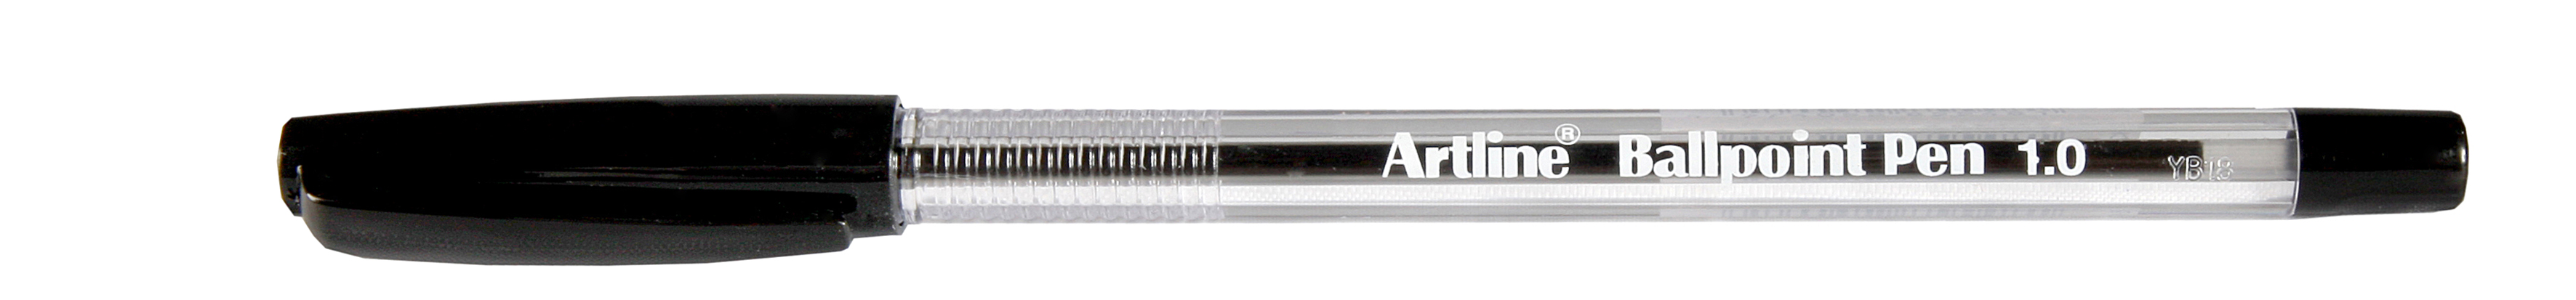 Artline pen